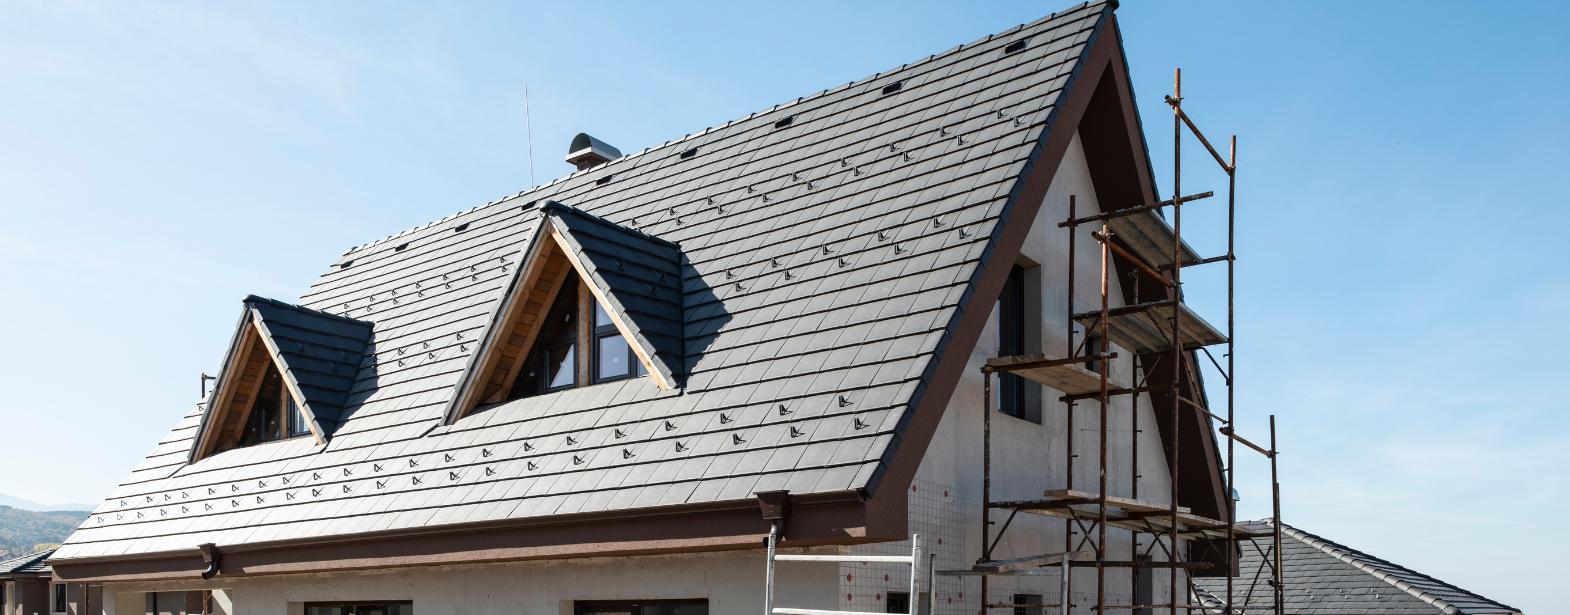 Dachy - poradnik dla budujących dom o tym, jakie wybrać dachy w zależności od klimatu